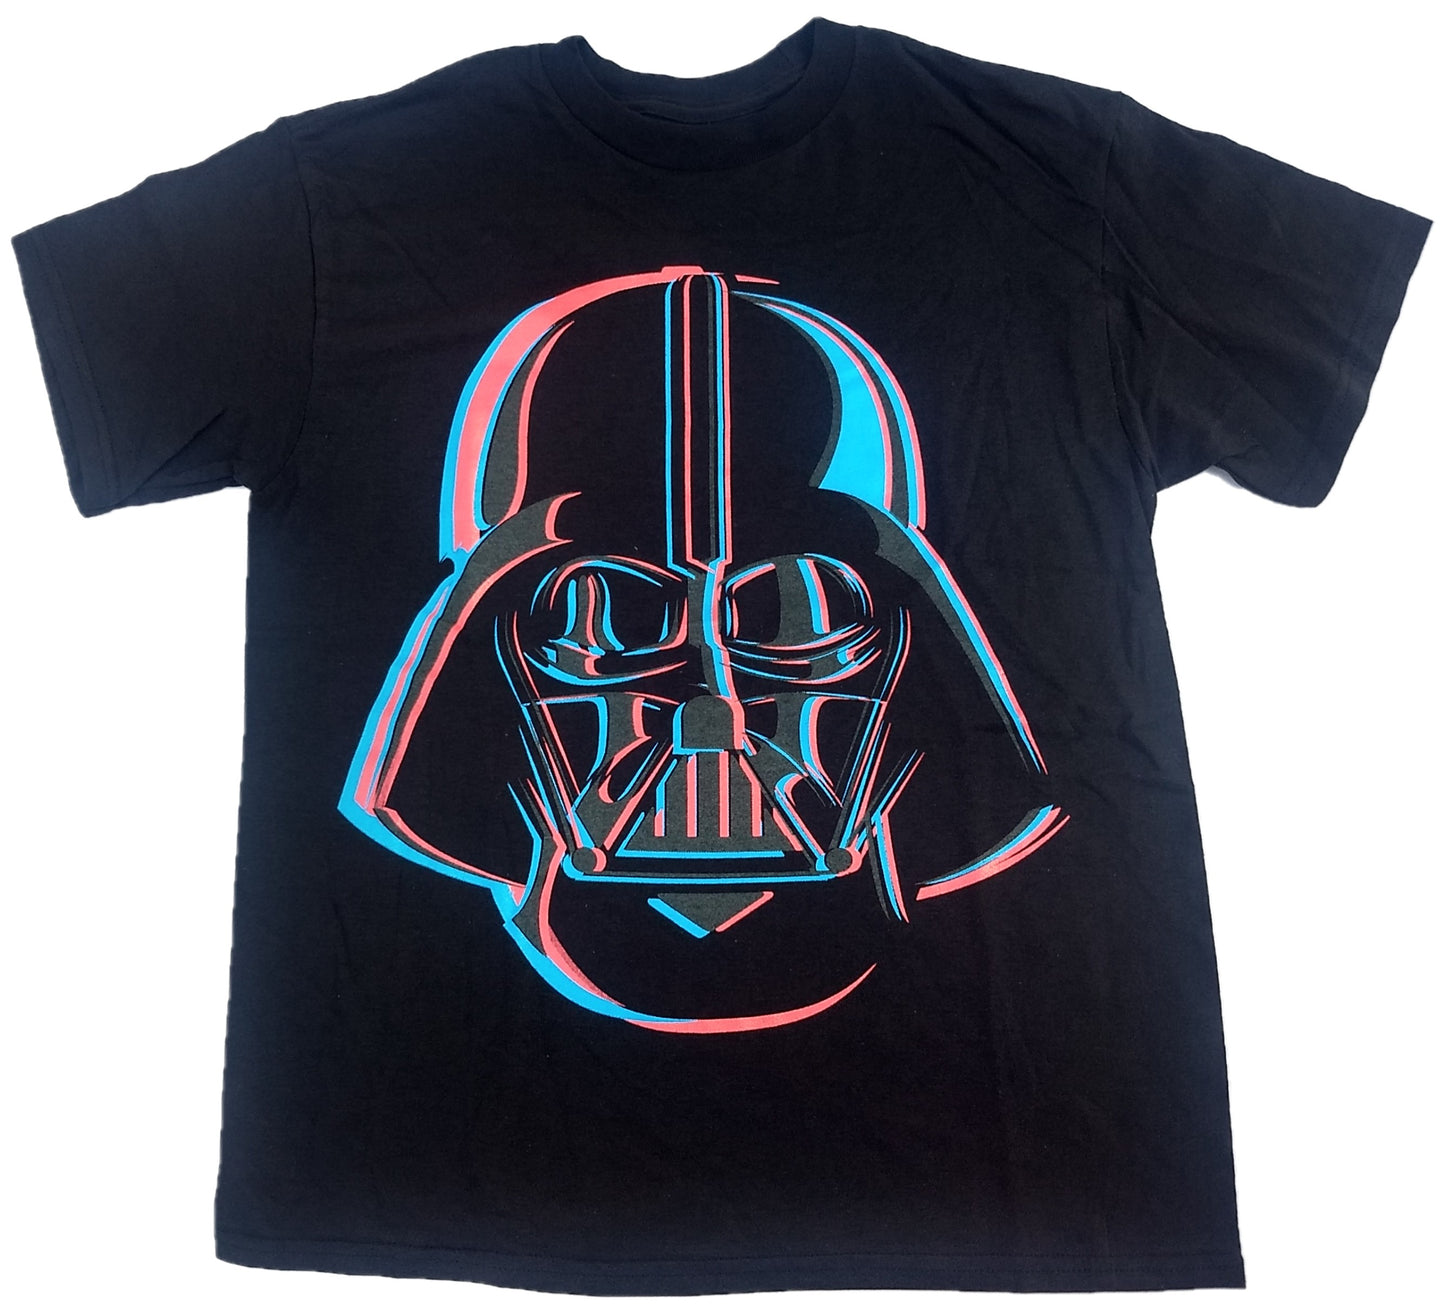 Darth Vader Star Wars Boys T-Shirt